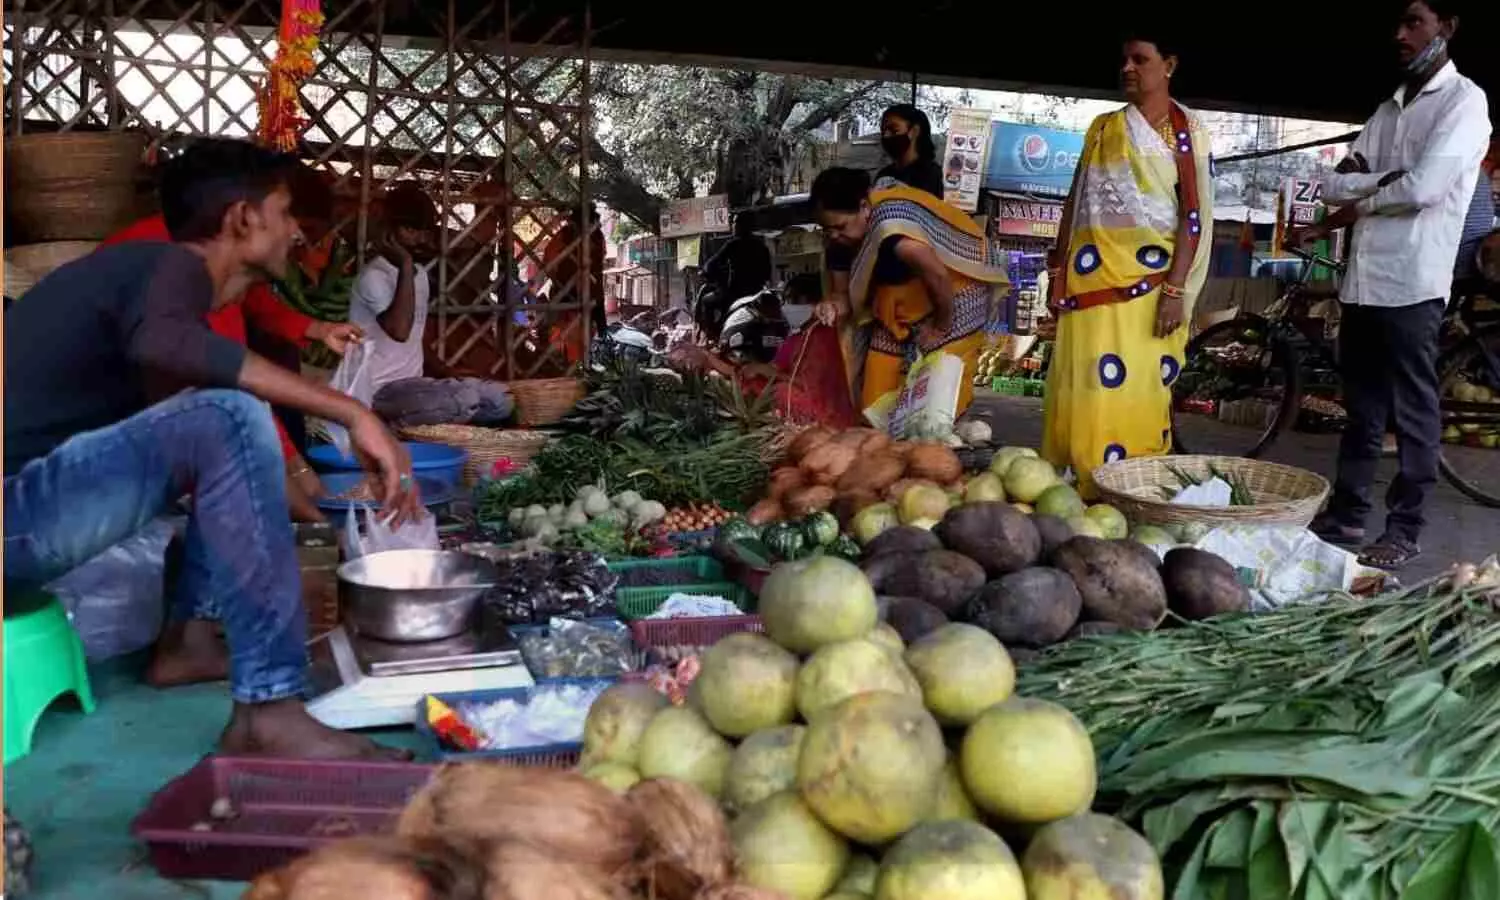 Lucknow Main Chhath Puja: नहाय खाय के साथ आज से शुरू हुआ छठ पर्व, लखनऊ के बाजारों में सामग्री खरीदते नजर आई महिलाएं